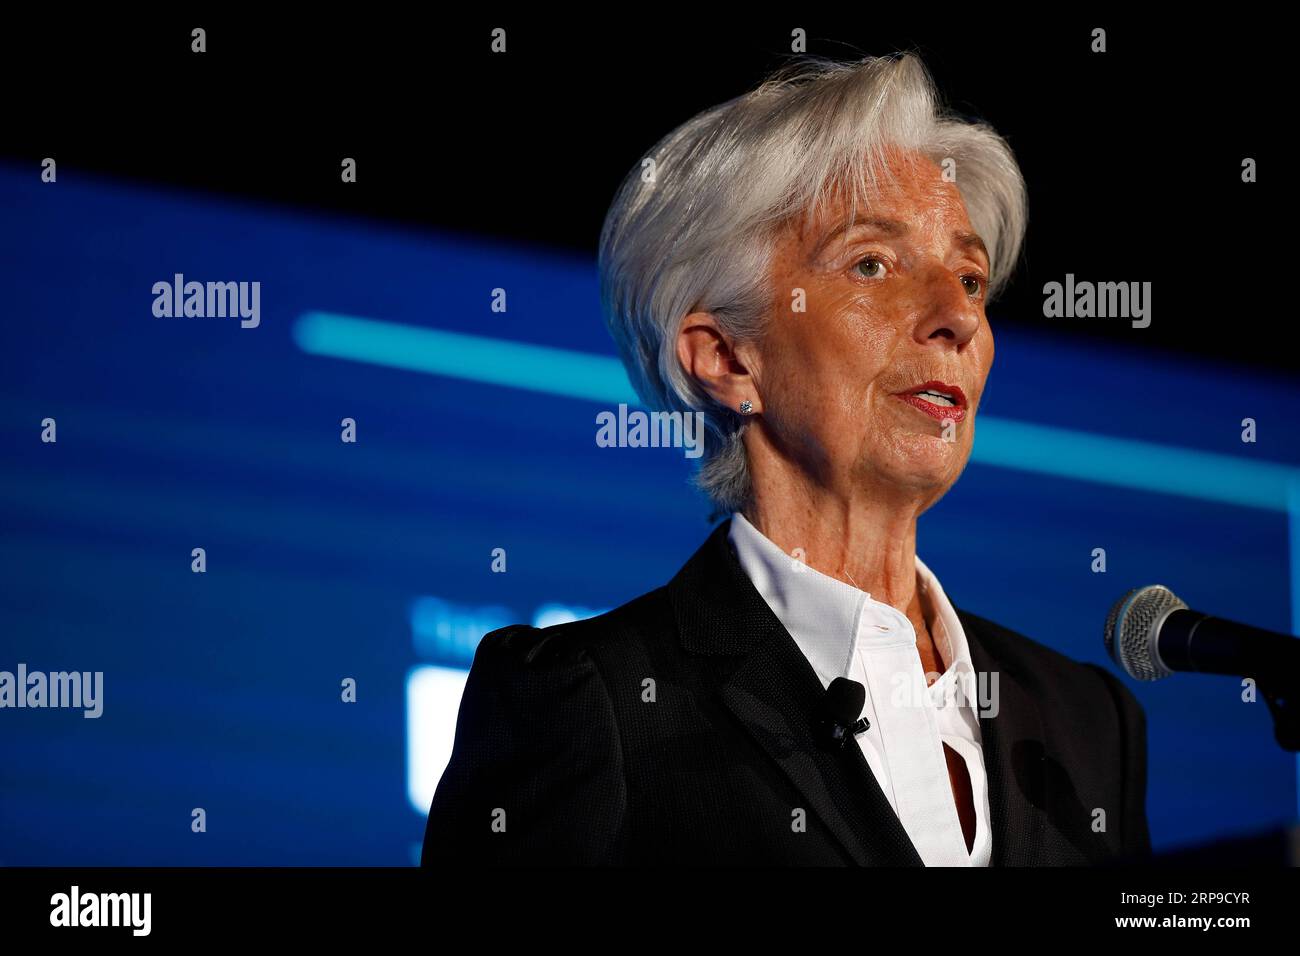 (190403) -- WASHINGTON D.C., 3 aprile 2019 (Xinhua) -- Amministratore delegato del Fondo monetario Internazionale (FMI) Christine Lagarde parla durante il 13 ° Annual Capital Markets Summit presso la sede della camera di commercio degli Stati Uniti a Washington D.C., negli Stati Uniti, 2 aprile 2019. Lagarde ha detto qui martedì che la sua istituzione prevede una decelerazione sincronizzata della crescita economica globale negli anni a venire. Ha anche affermato che l'imposizione di dazi all'importazione non eliminerà i deficit commerciali e causerà ferite potenzialmente autoinflitte. (Xinhua/Ting Shen) U.S.-WASHINGTON D.C.-FMI-GESTIONE DIRETTA Foto Stock